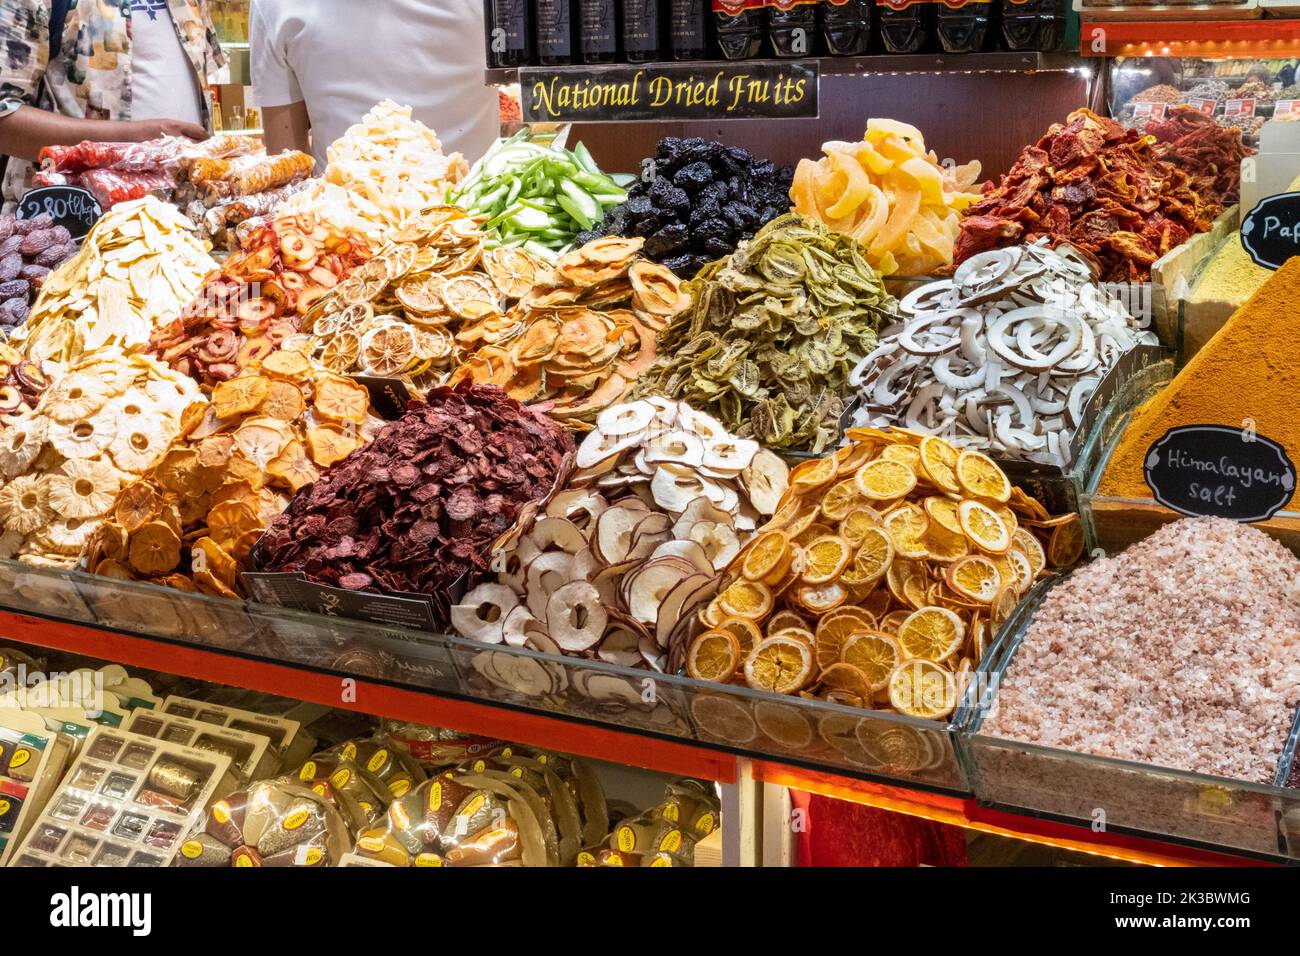 Images colorées de fruits secs du bazar de Mısır, de la cuisine turque traditionnelle à Istanbul, du shopping dans un bazar, des stands de marché d'arcade Banque D'Images